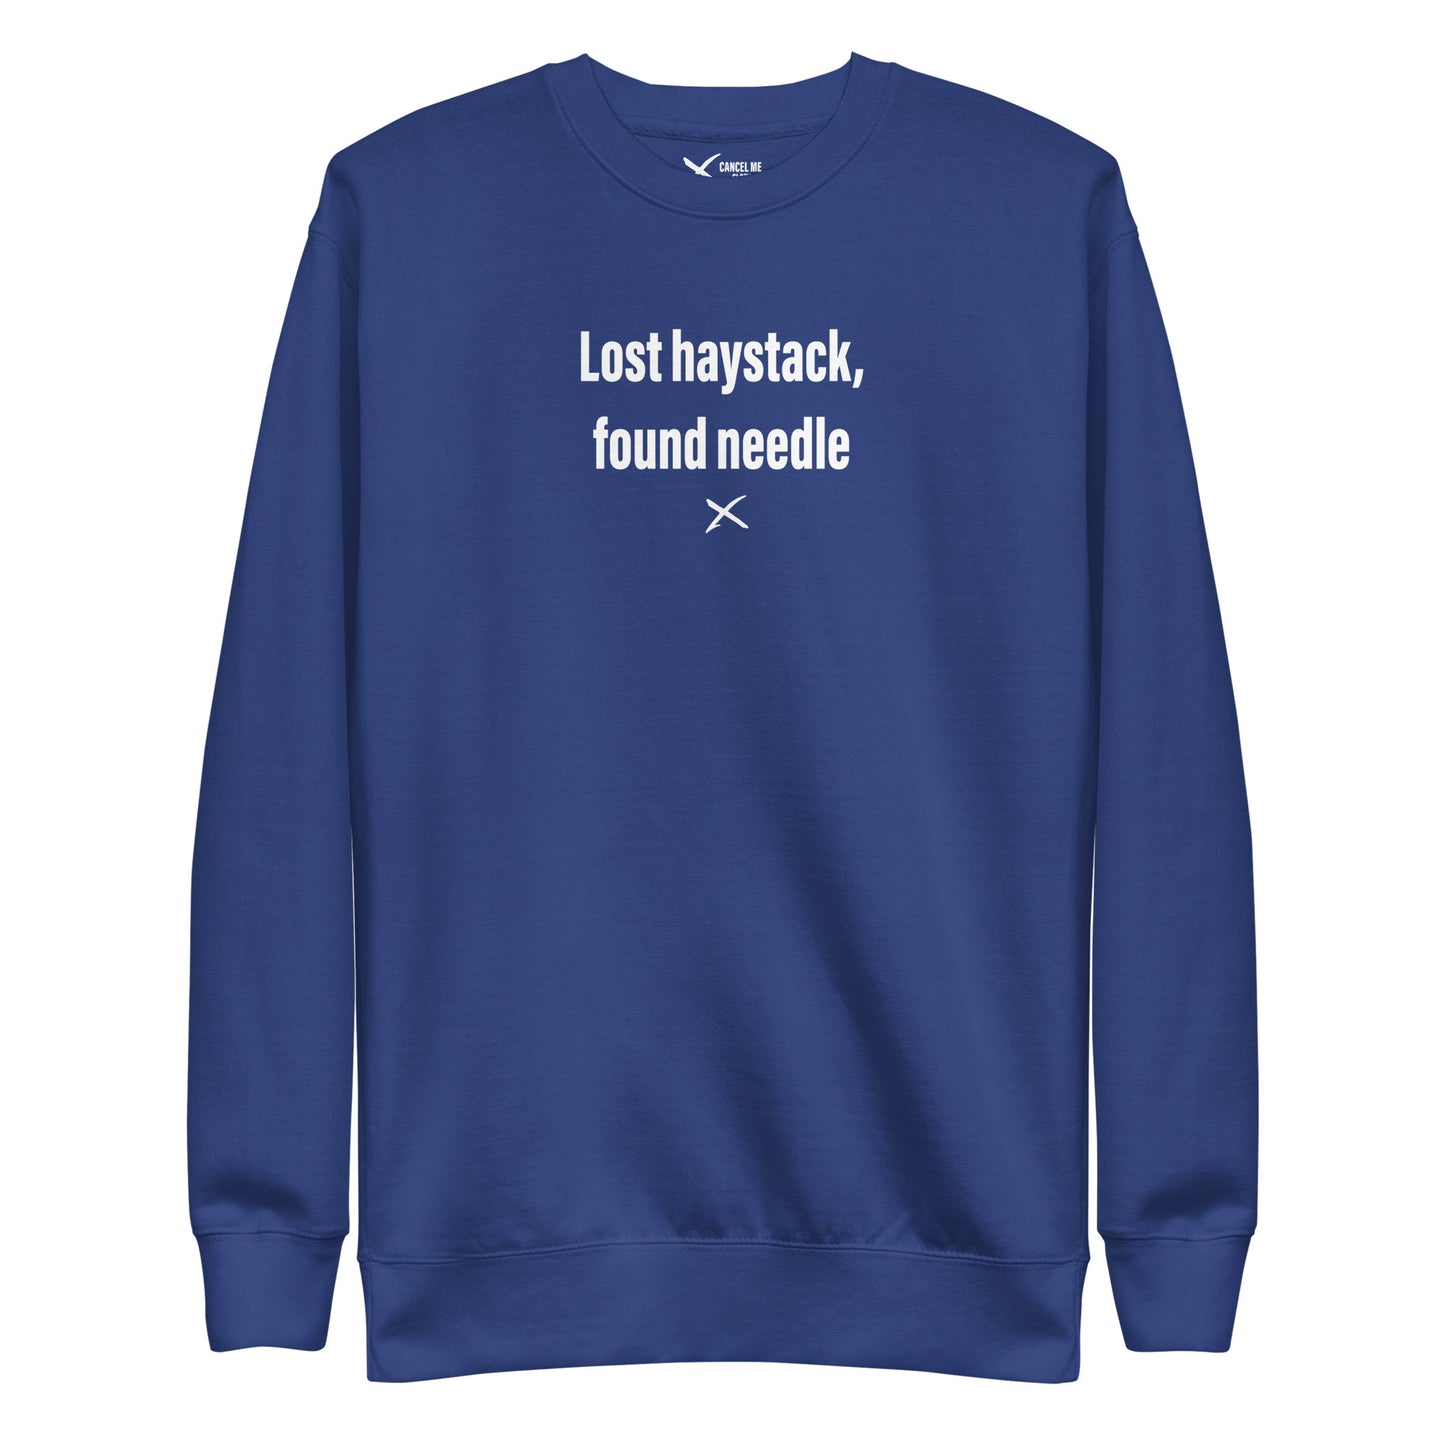 Lost haystack, found needle - Sweatshirt